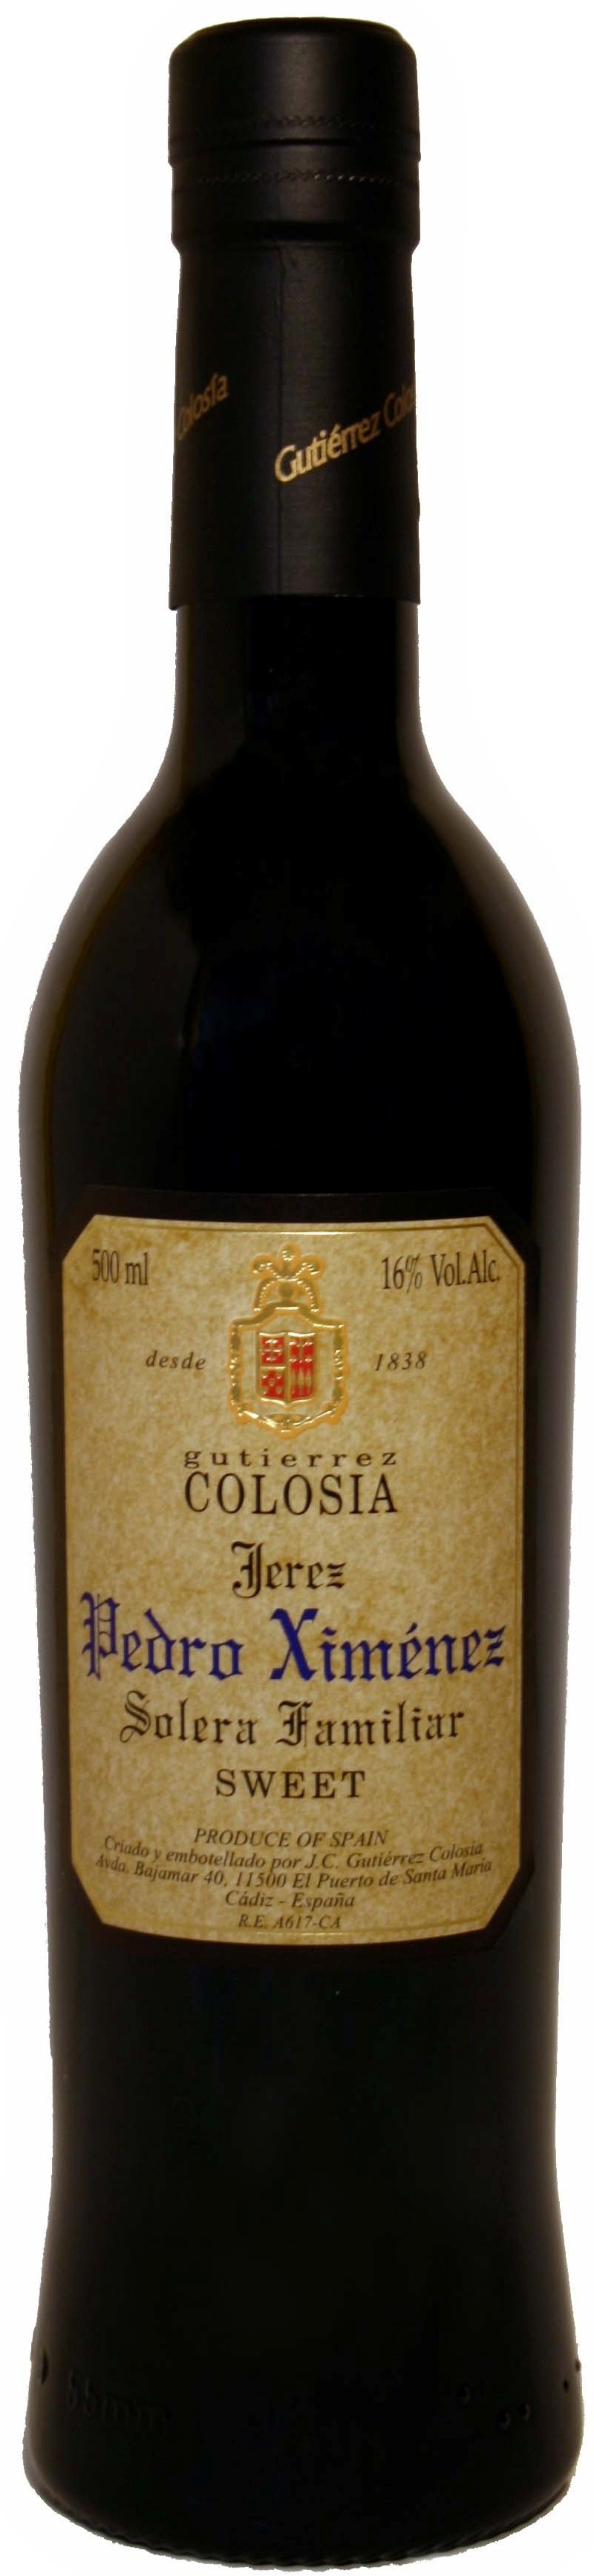 Bild von der Weinflasche Colosía Solera Familiar Pedro Ximénez